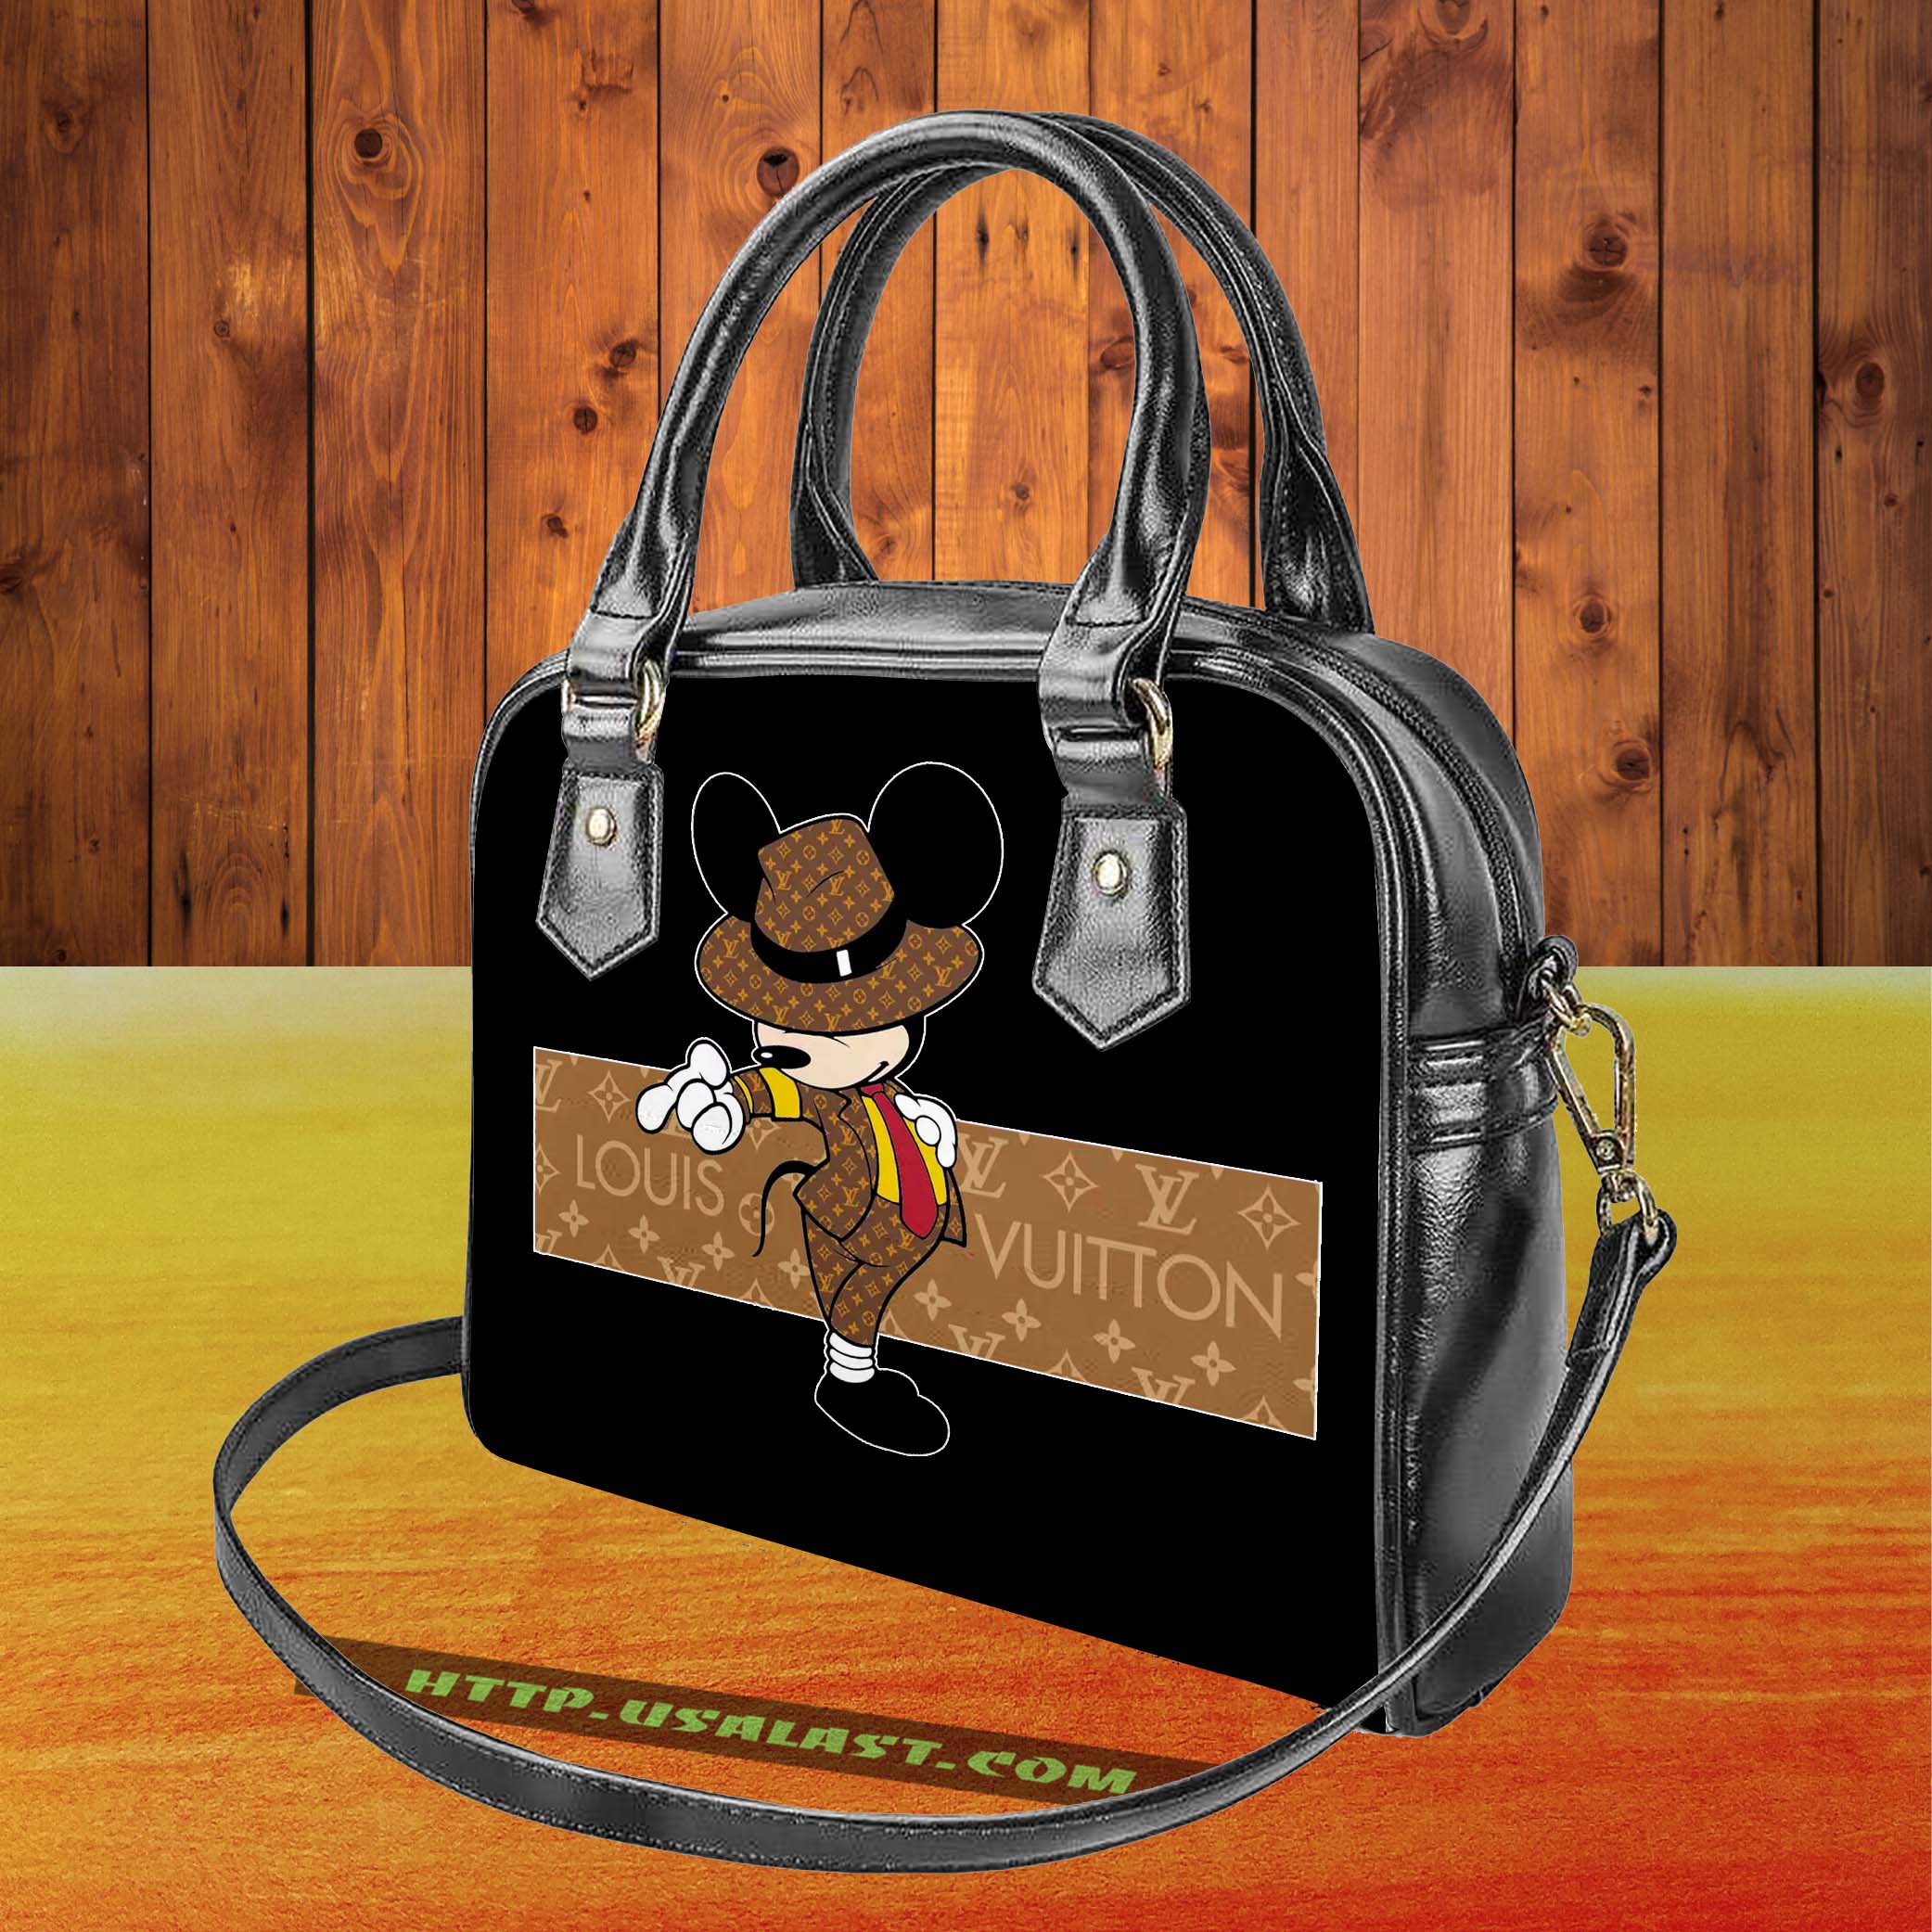 AuOC0eF3-T080322-091xxxMickey-Mouse-Louis-Vuitton-Shoulder-Handbag.jpg